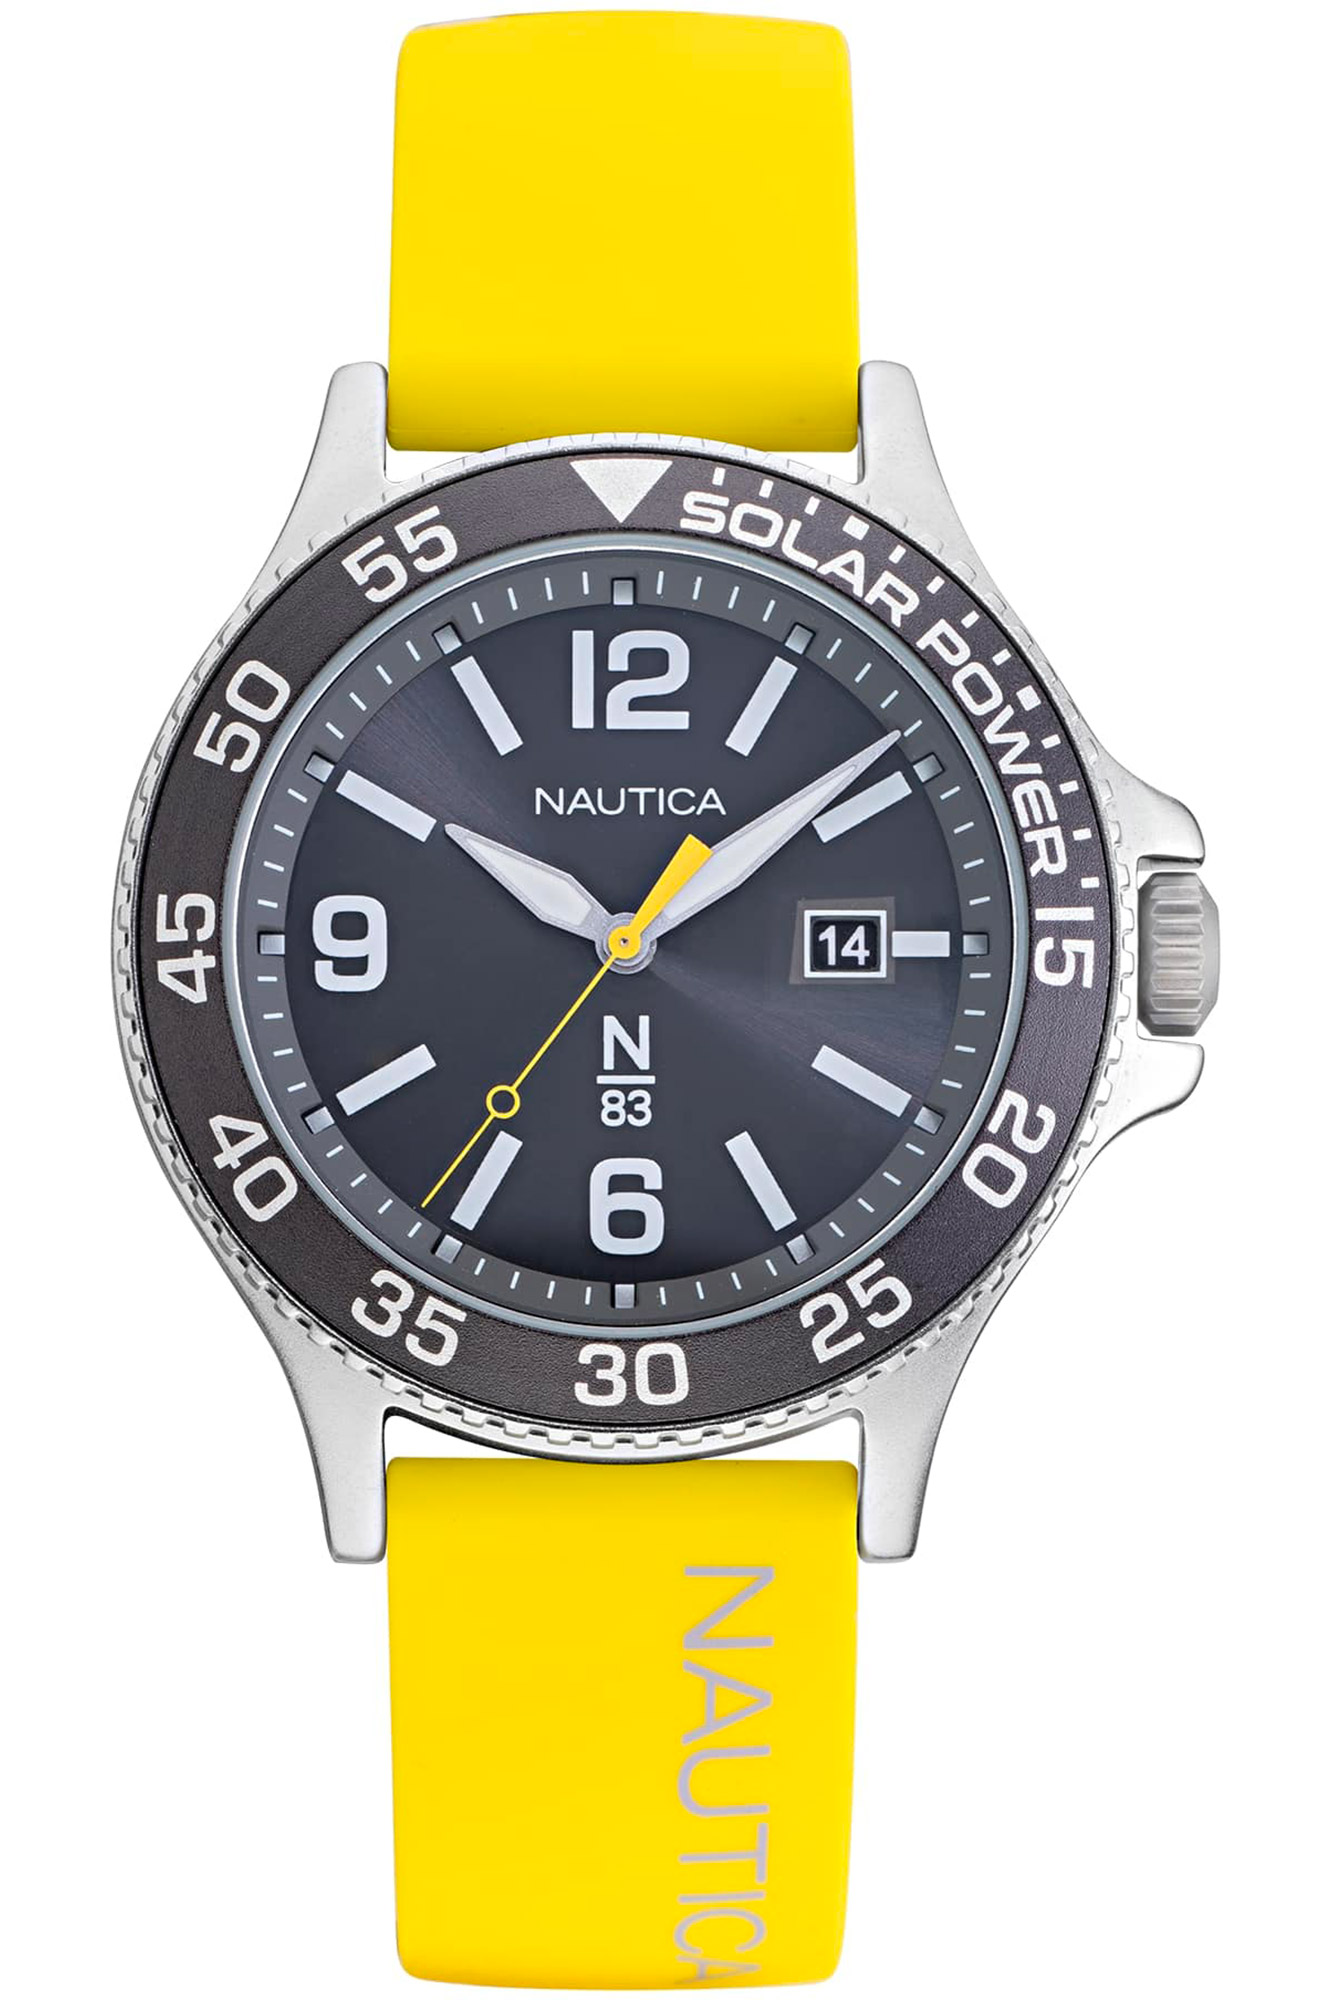 Reloj Nautica napcbs023